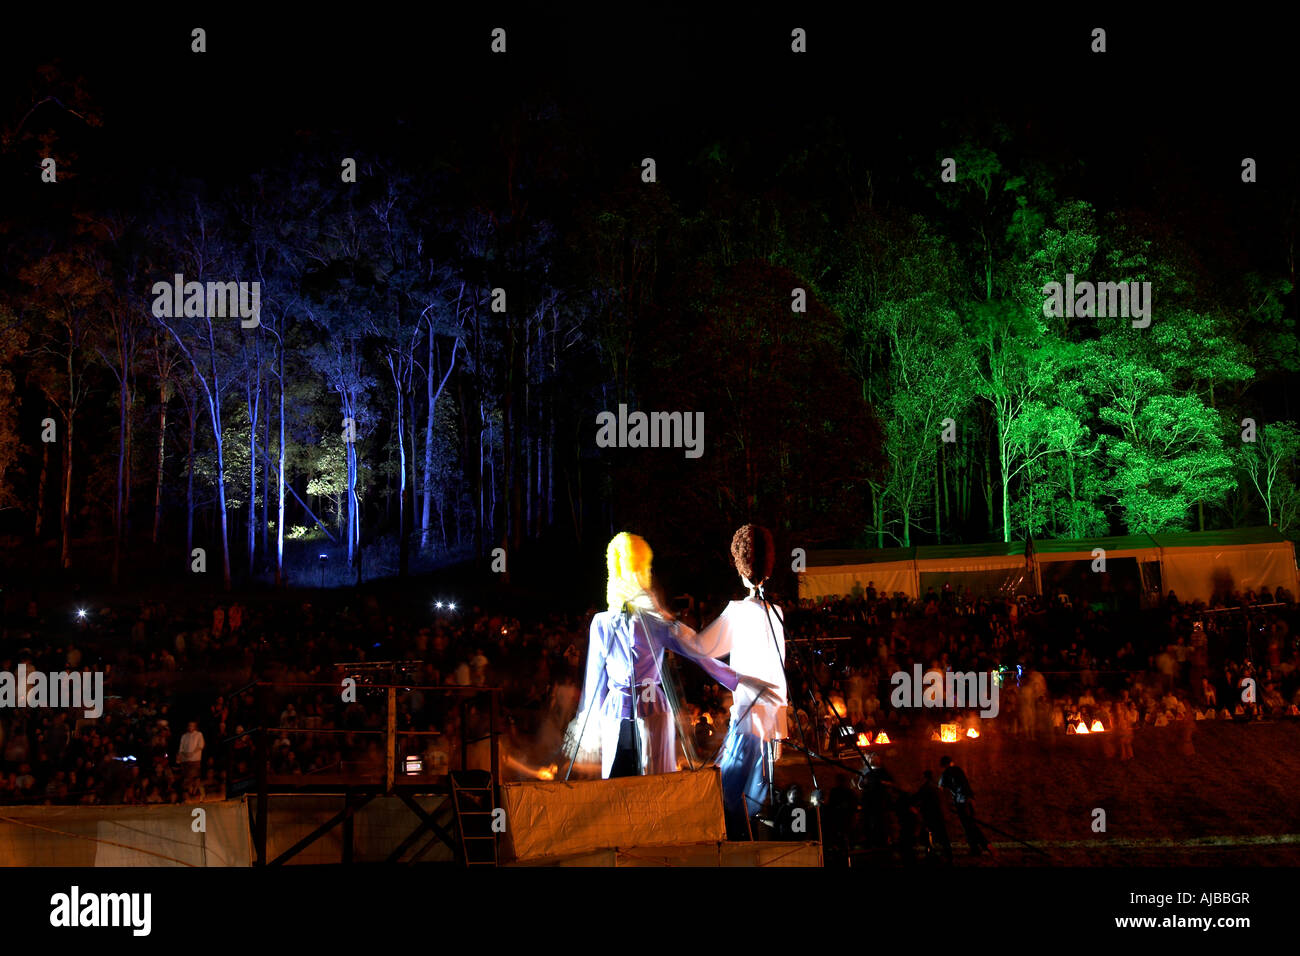 Les chiffres de marionnettes géantes avec l'illumination de l'arbre et le public dans l'amphithéâtre à incendie performance à Woodford Folk Festival Queensl Banque D'Images